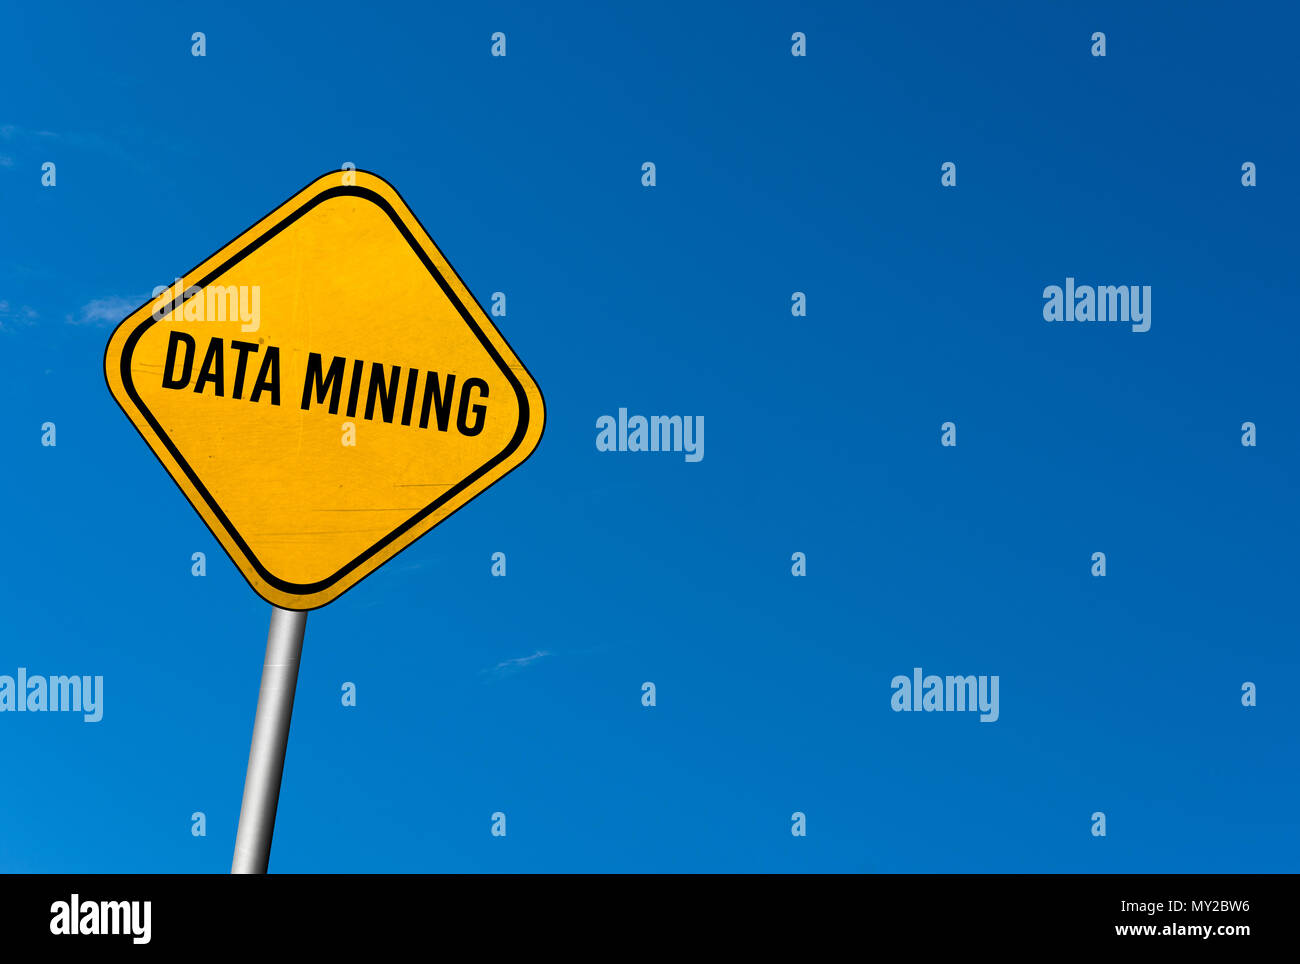 Data mining - panneau jaune avec ciel bleu Banque D'Images